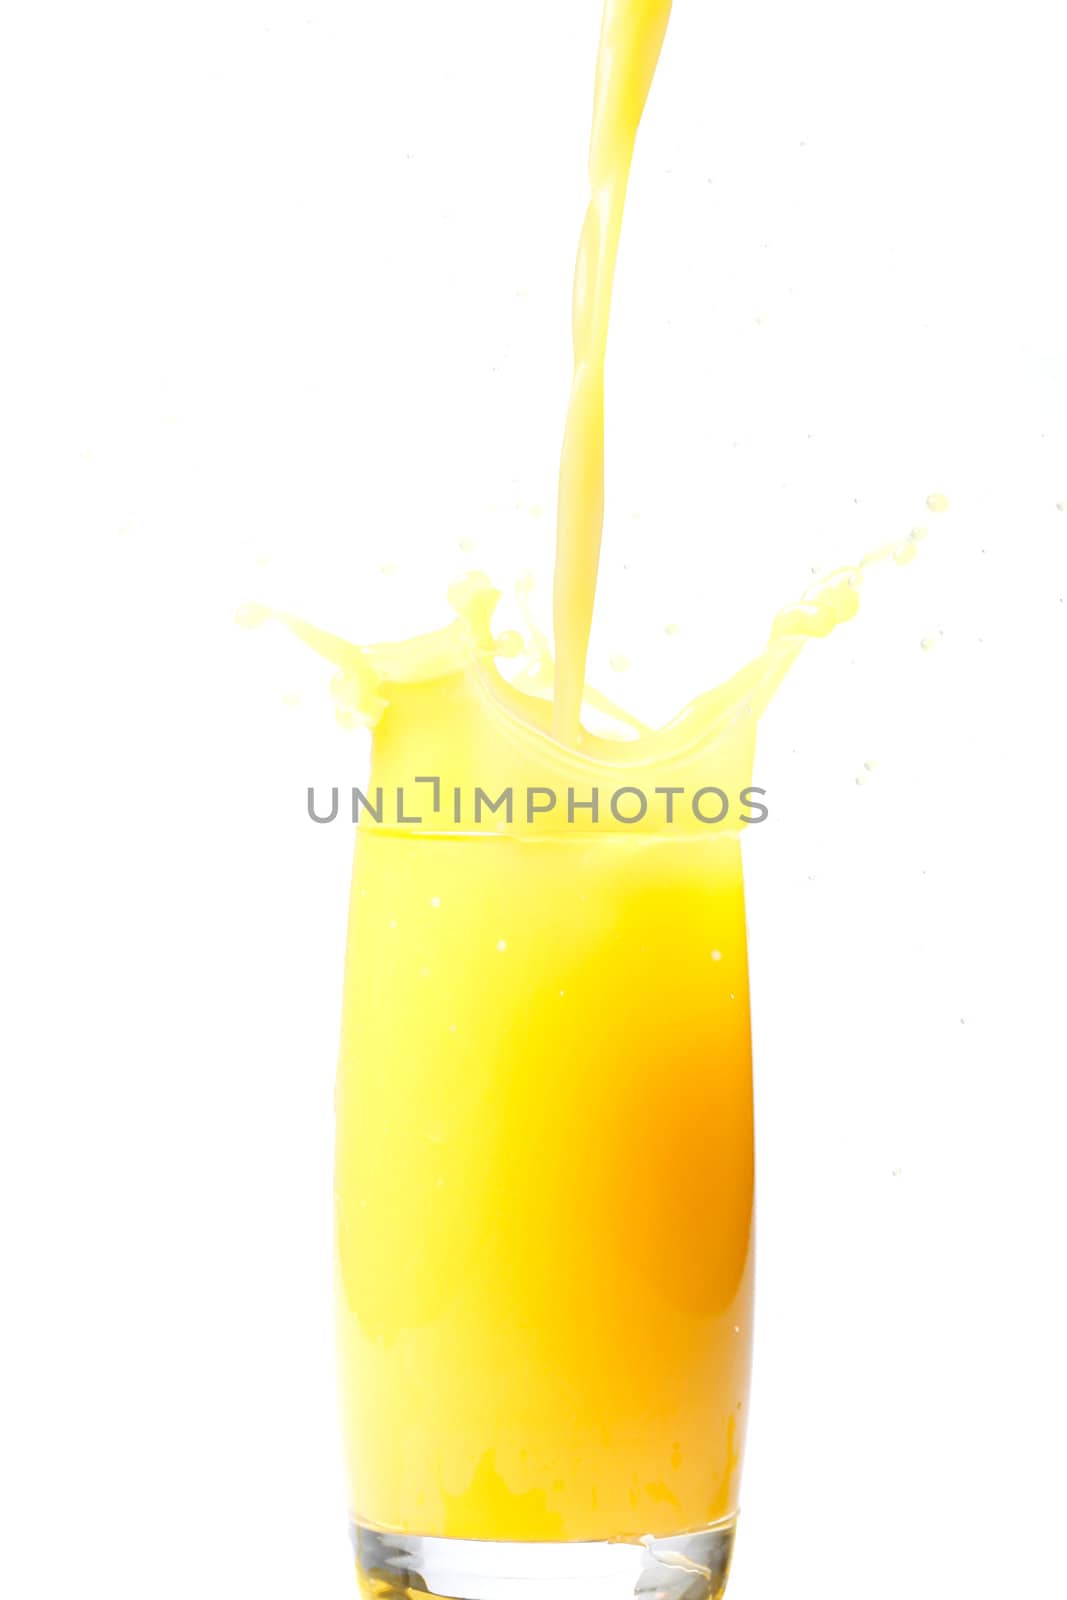 Orange juice by leeser